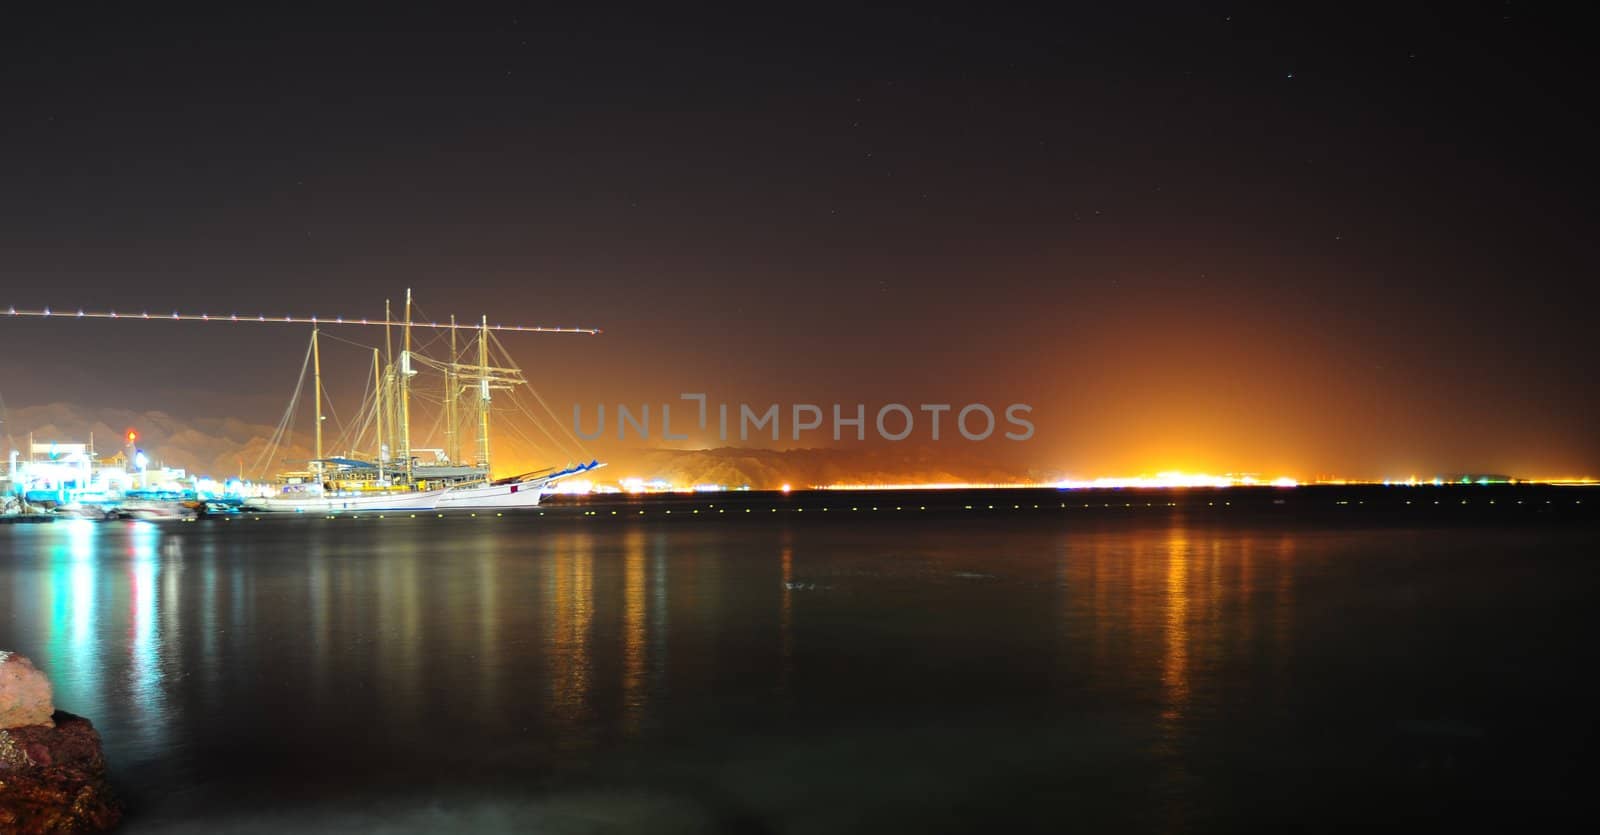 The Night Scenes Of Quiet Port, Red Sea